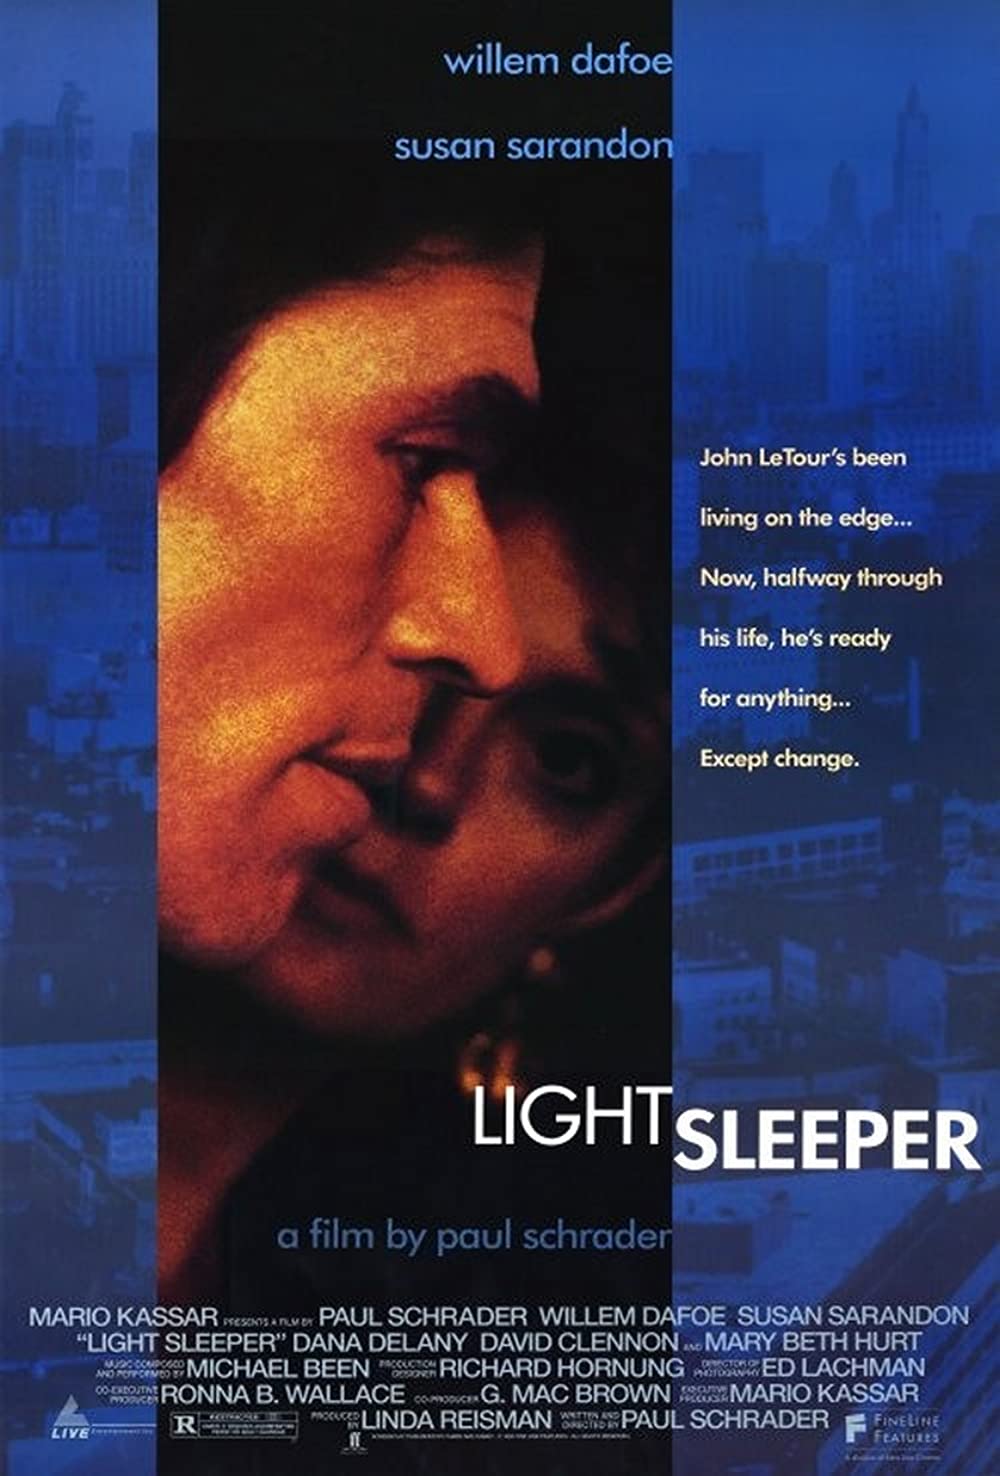 Filmbeschreibung zu Light Sleeper